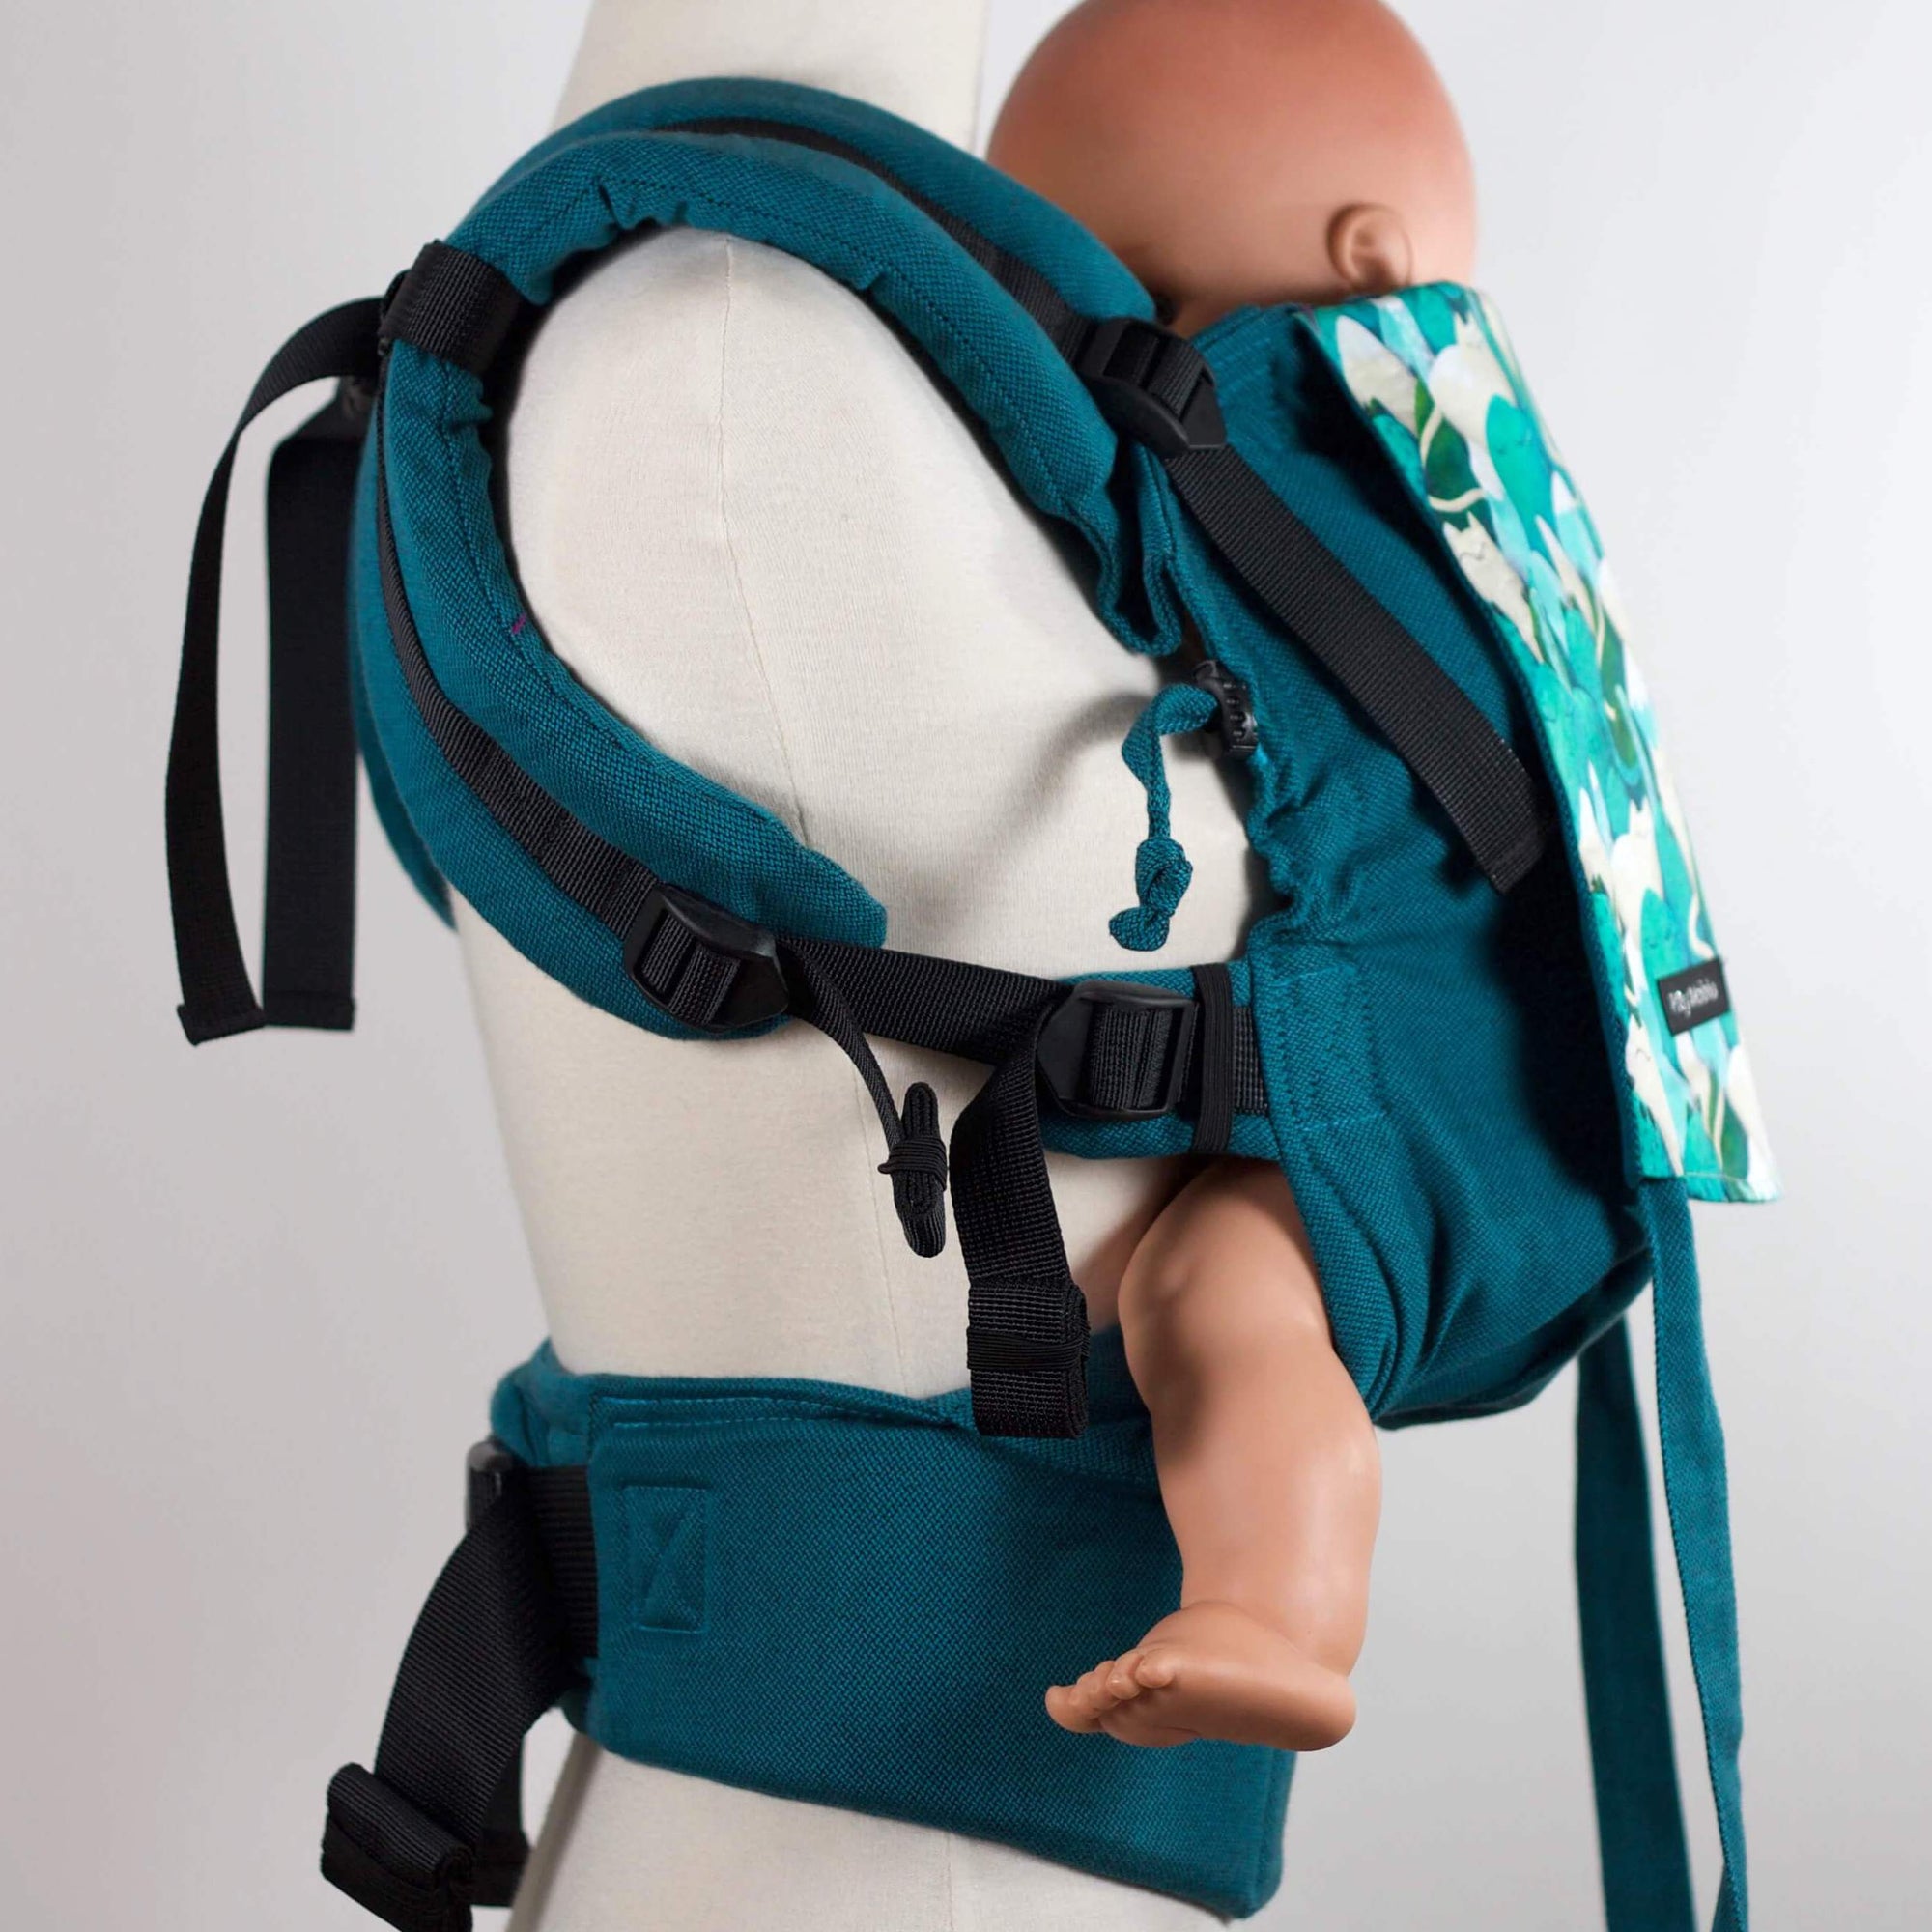 porte-bebe cliptsy ceinture à clip et réglables par boucles et sangles.